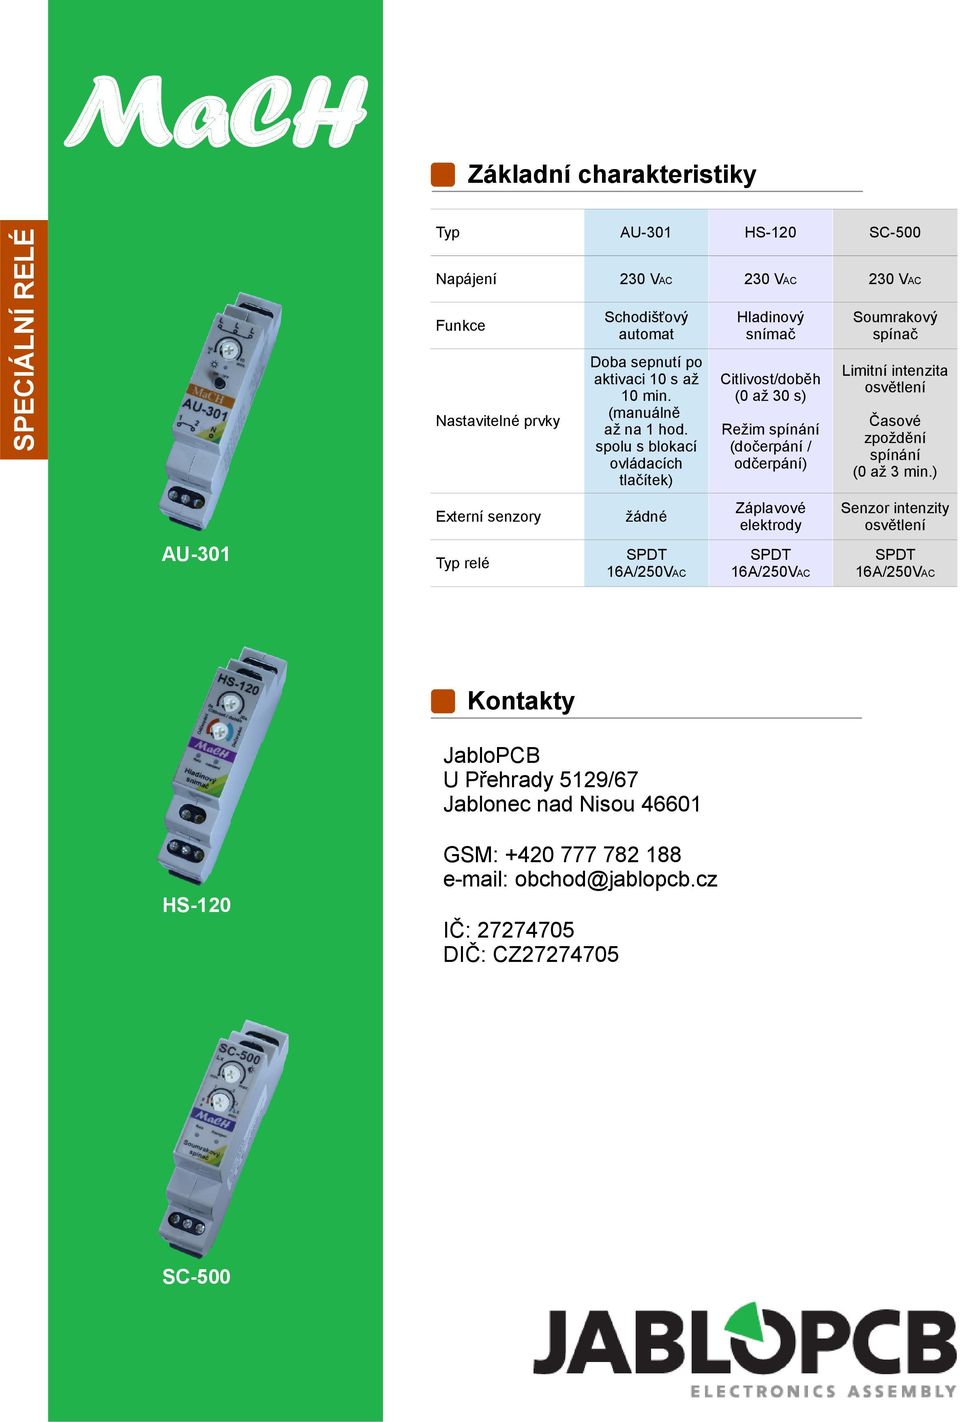 ) žádné Záplavové elektrody Senzor intenzity osvětlení Kontakty JabloPCB U Přehrady 5129/67 Jablonec nad Nisou 46601 GSM: +420 777 782 188